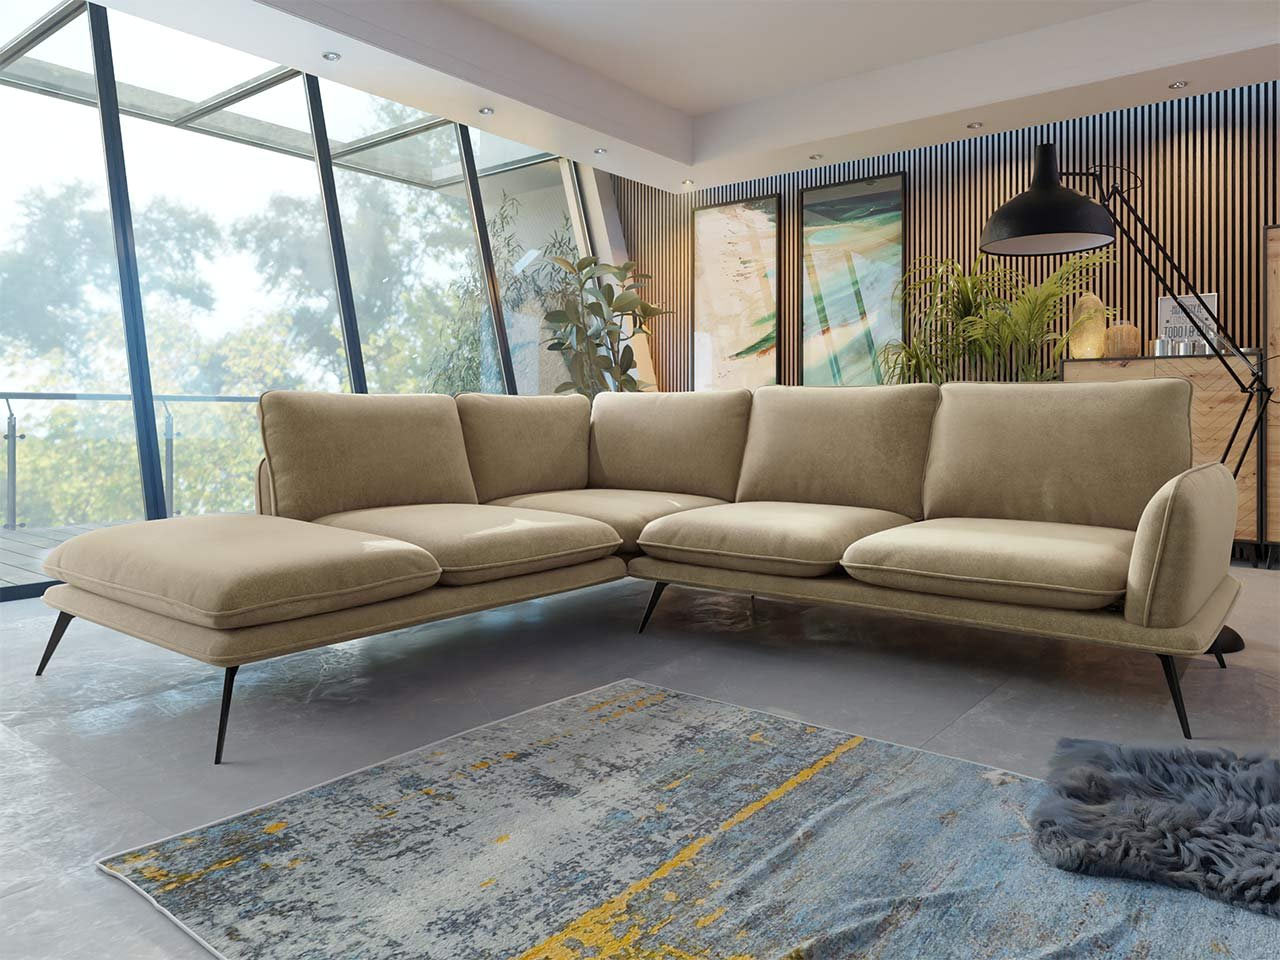 Dizajnová béžová sedačka podčiarkne štýl vašej obývačky